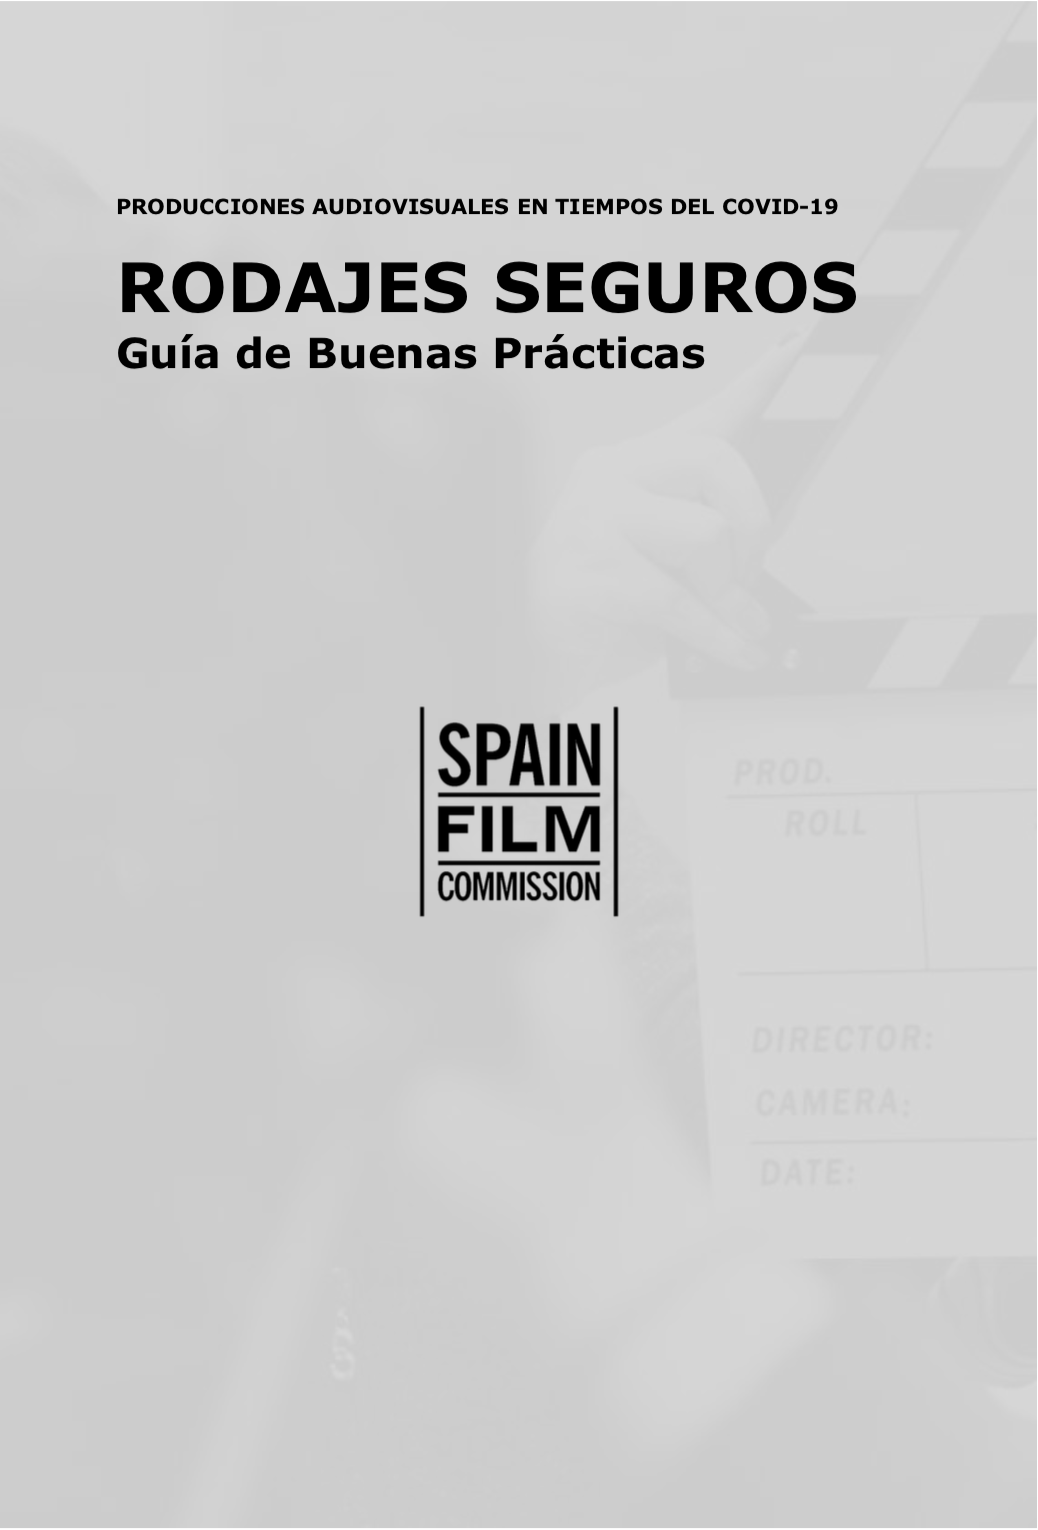 Rodajes seguros Guia de buenas practicas COVID19 - Andalucía Film Commission